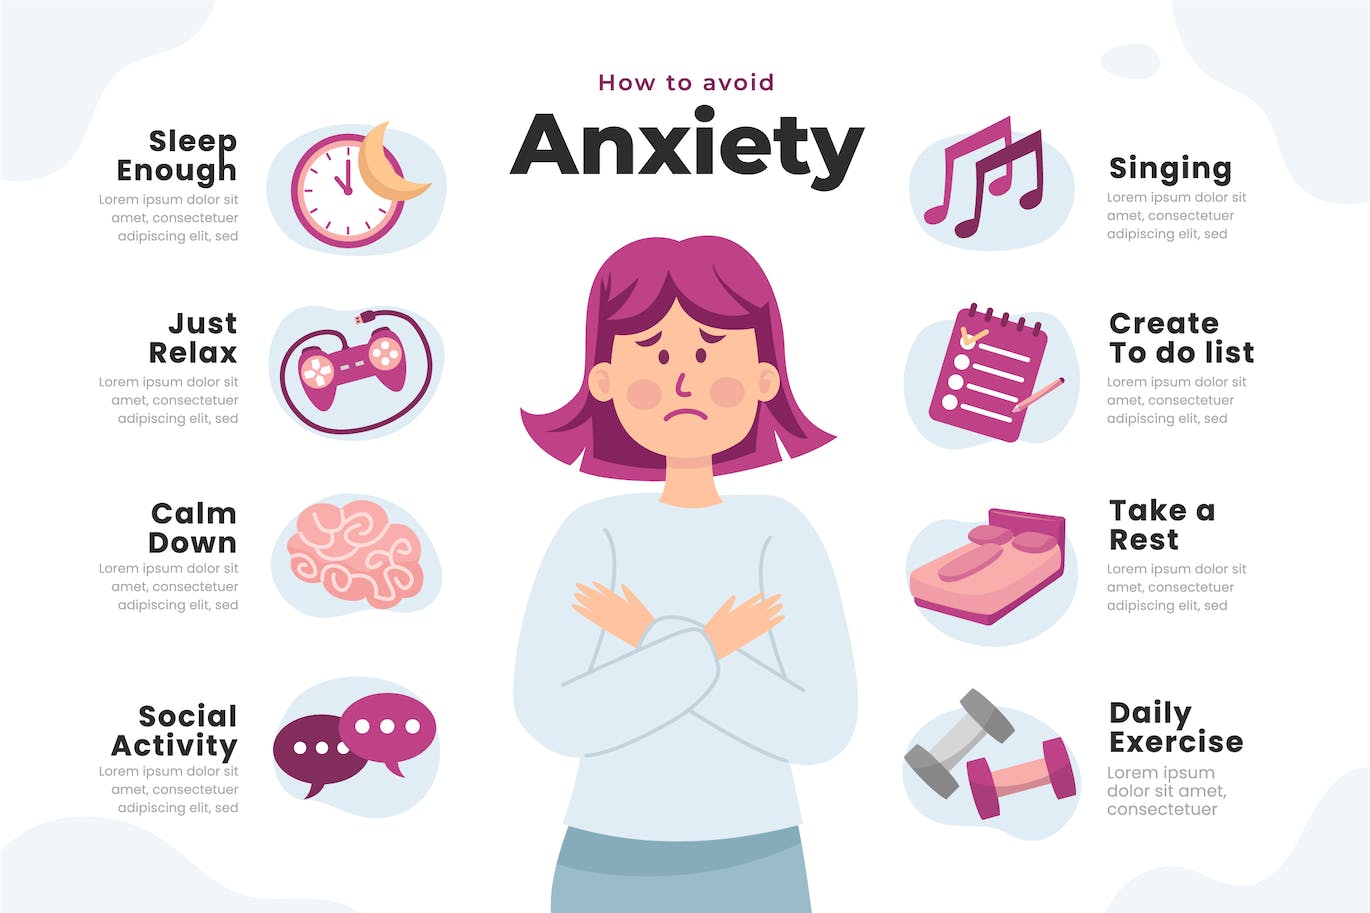 心理健康焦虑信息图表模板 Mental Health Anxiety Infographic 幻灯图表 第1张